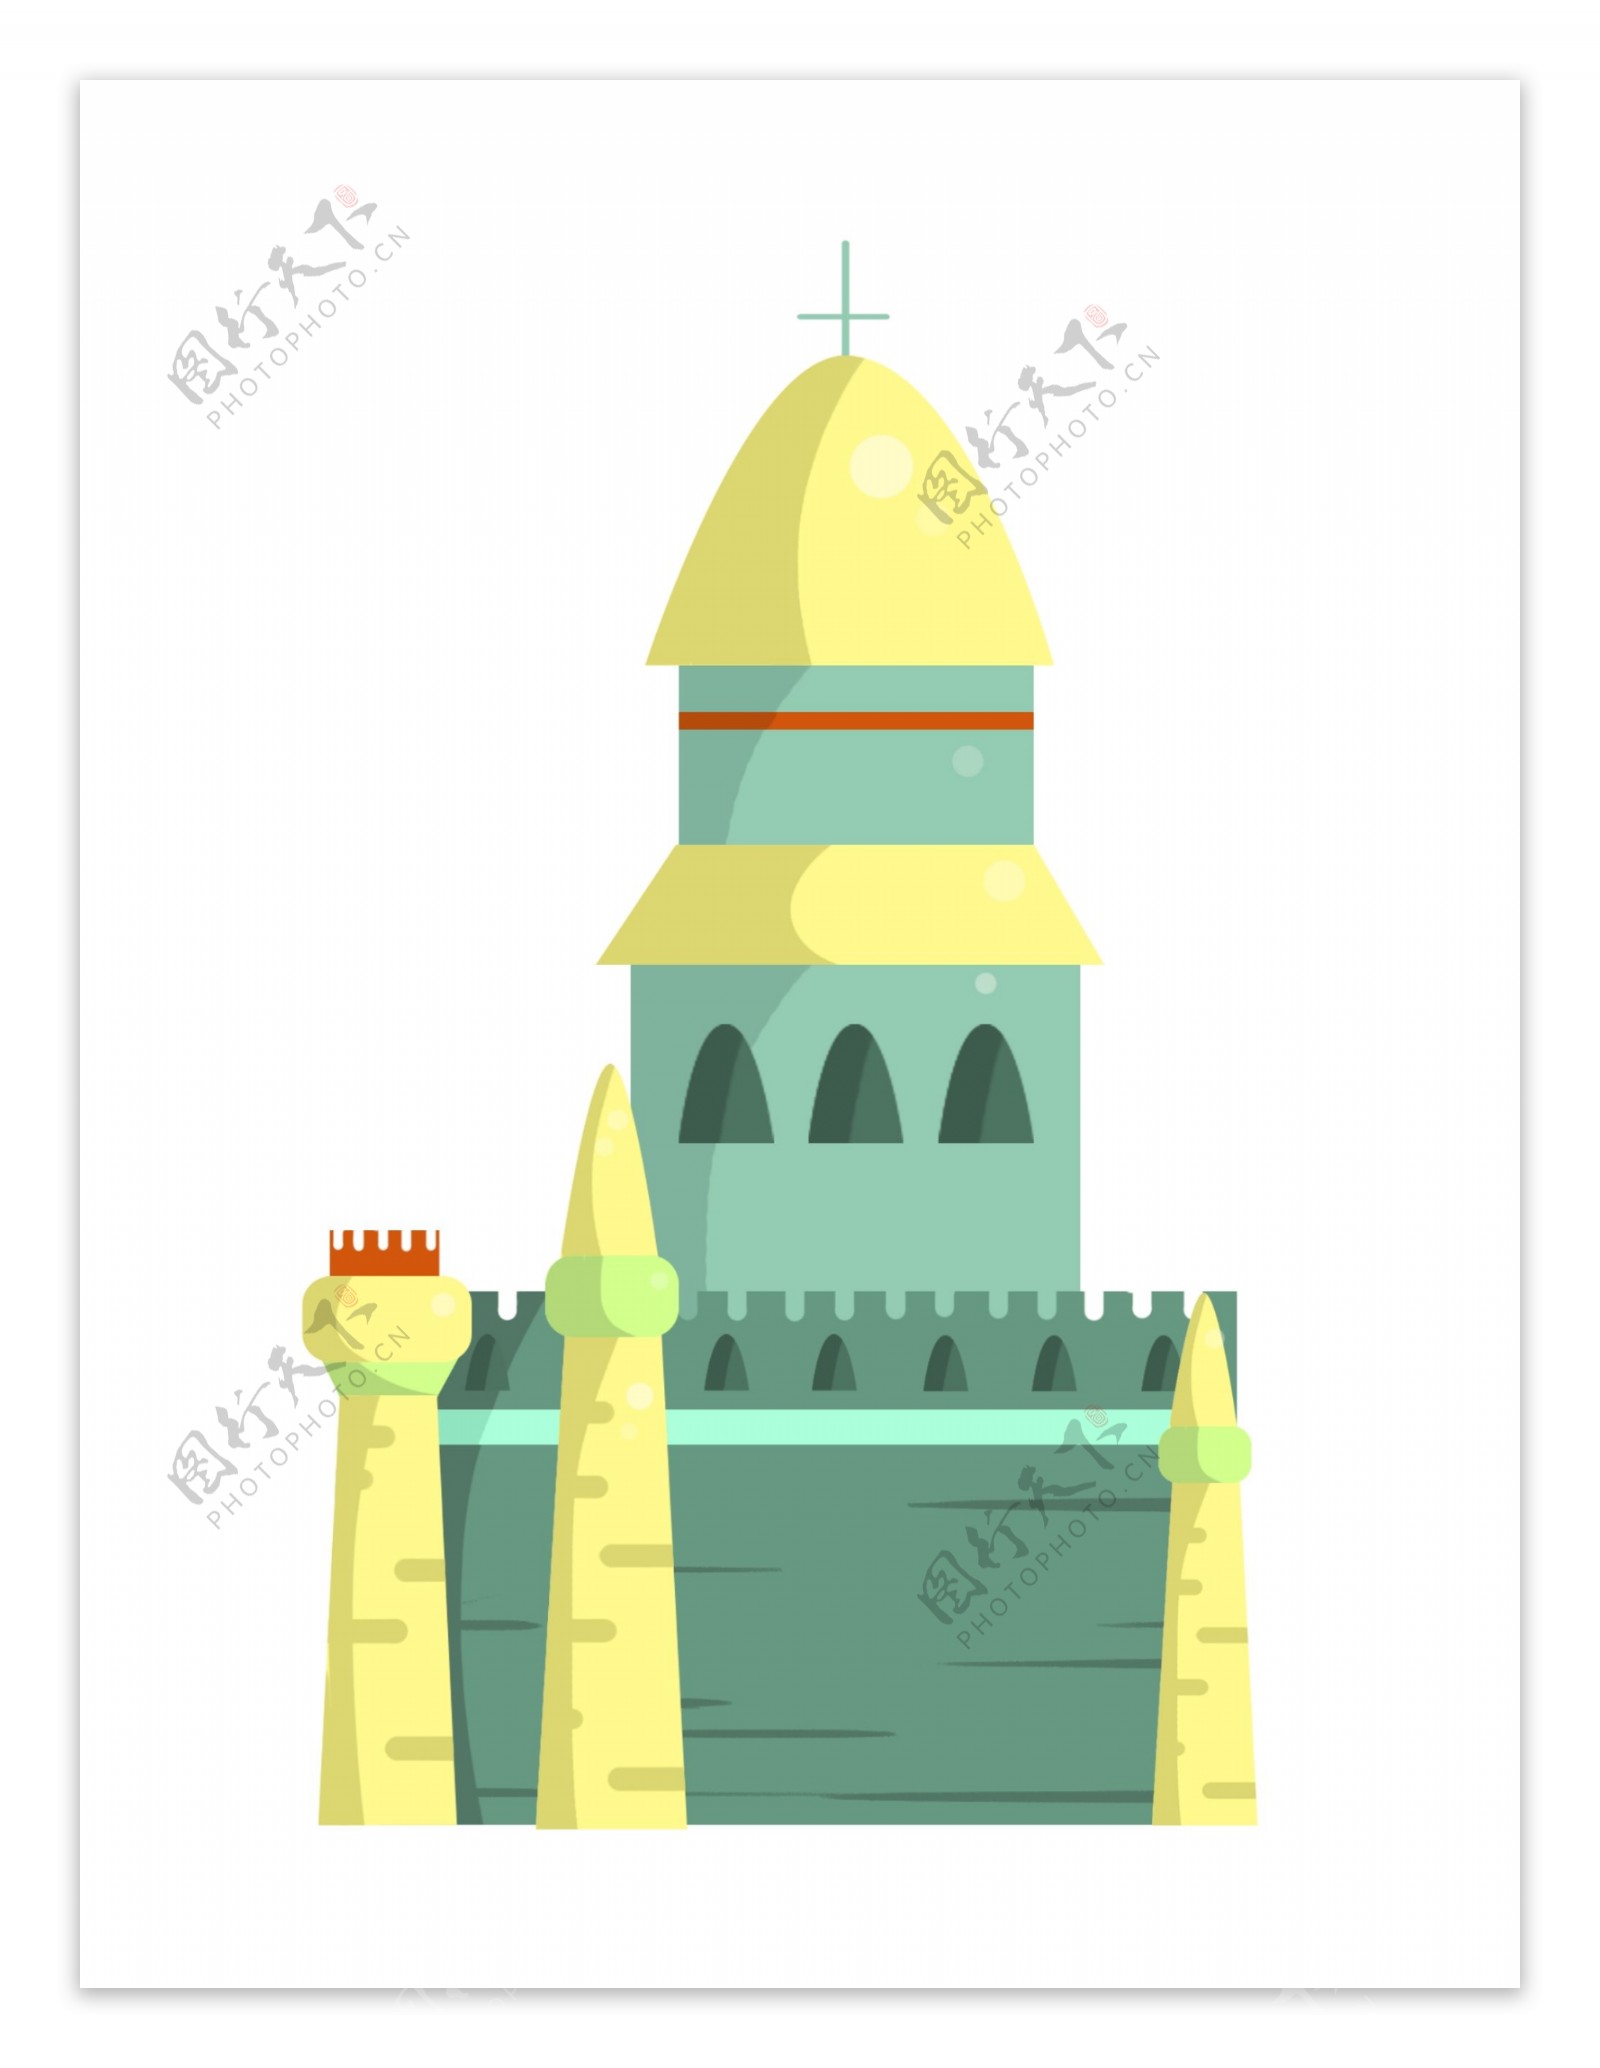 十字架城堡装饰插画